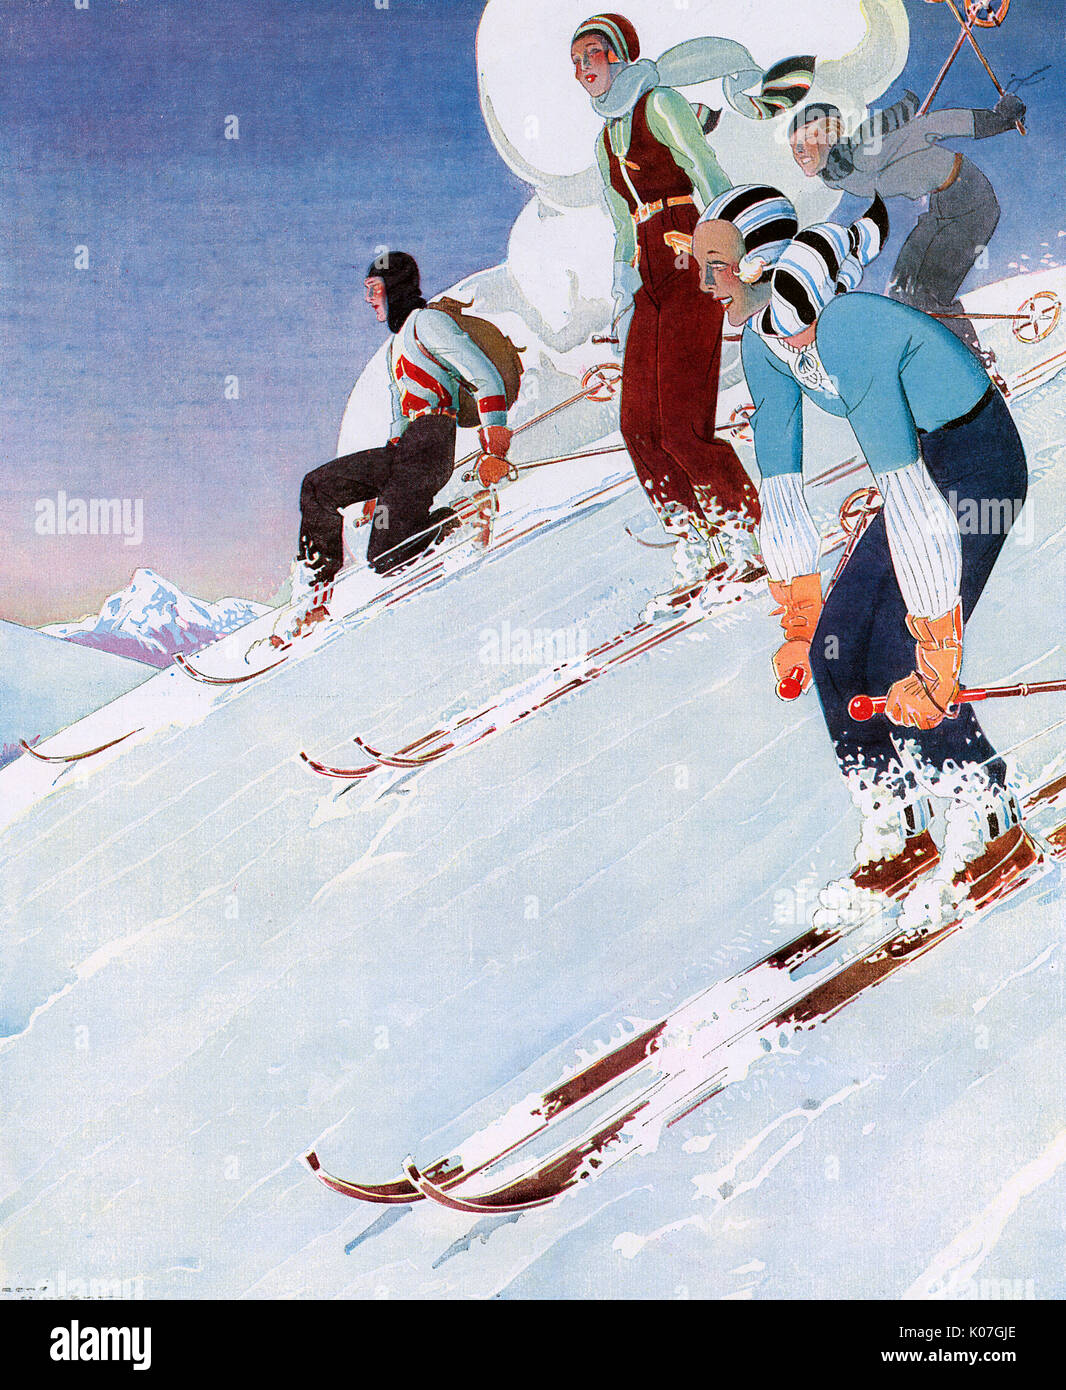 Un quatuor de skieurs de descente course vêtus de couleurs vives. Date : 1931 Banque D'Images